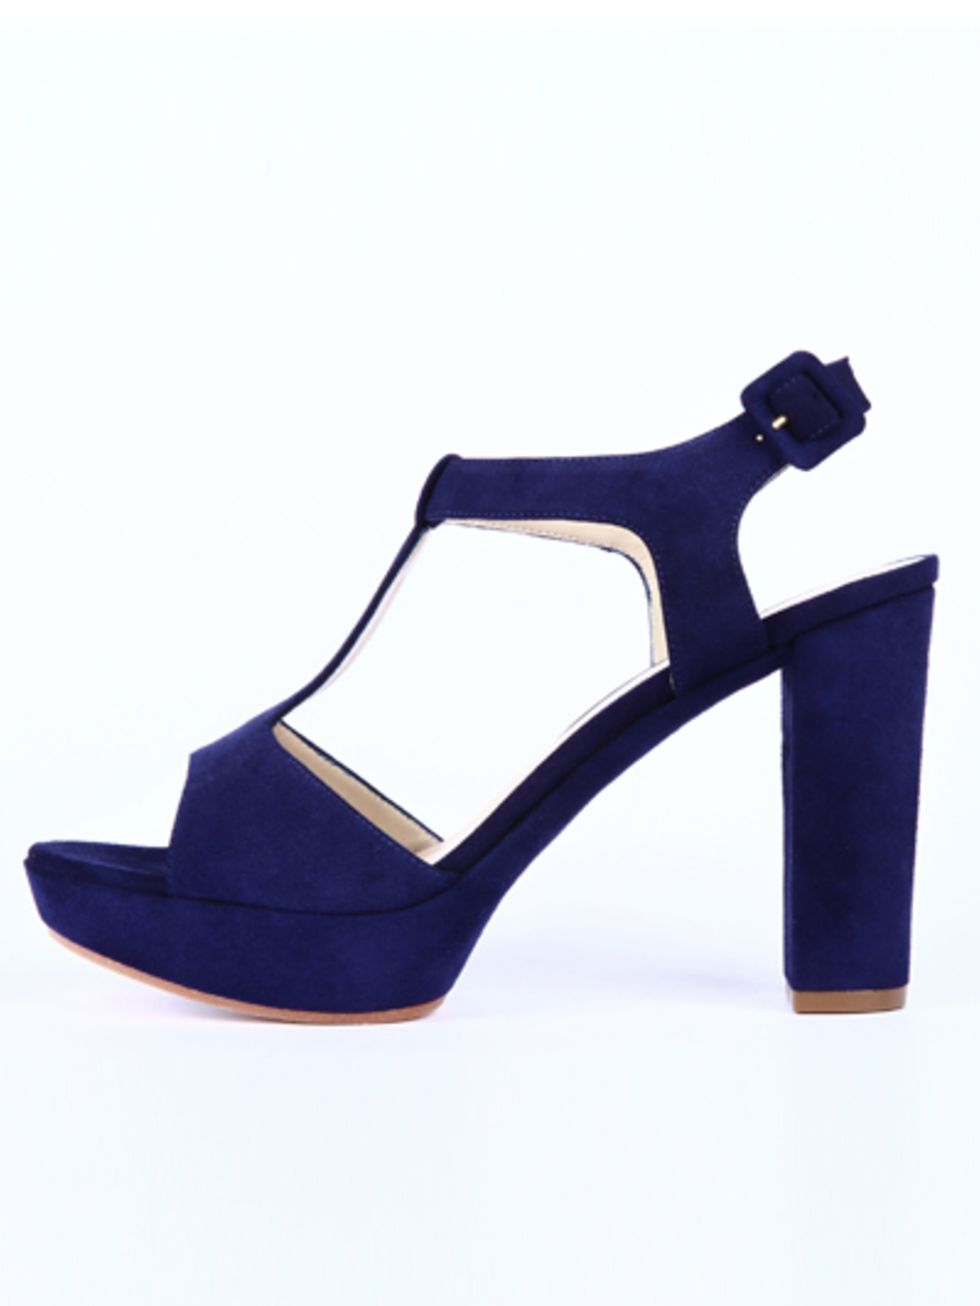 Footwear, High heels, Sandal, Basic pump, Black, Electric blue, Tan, Beige, Foot, Strap, 